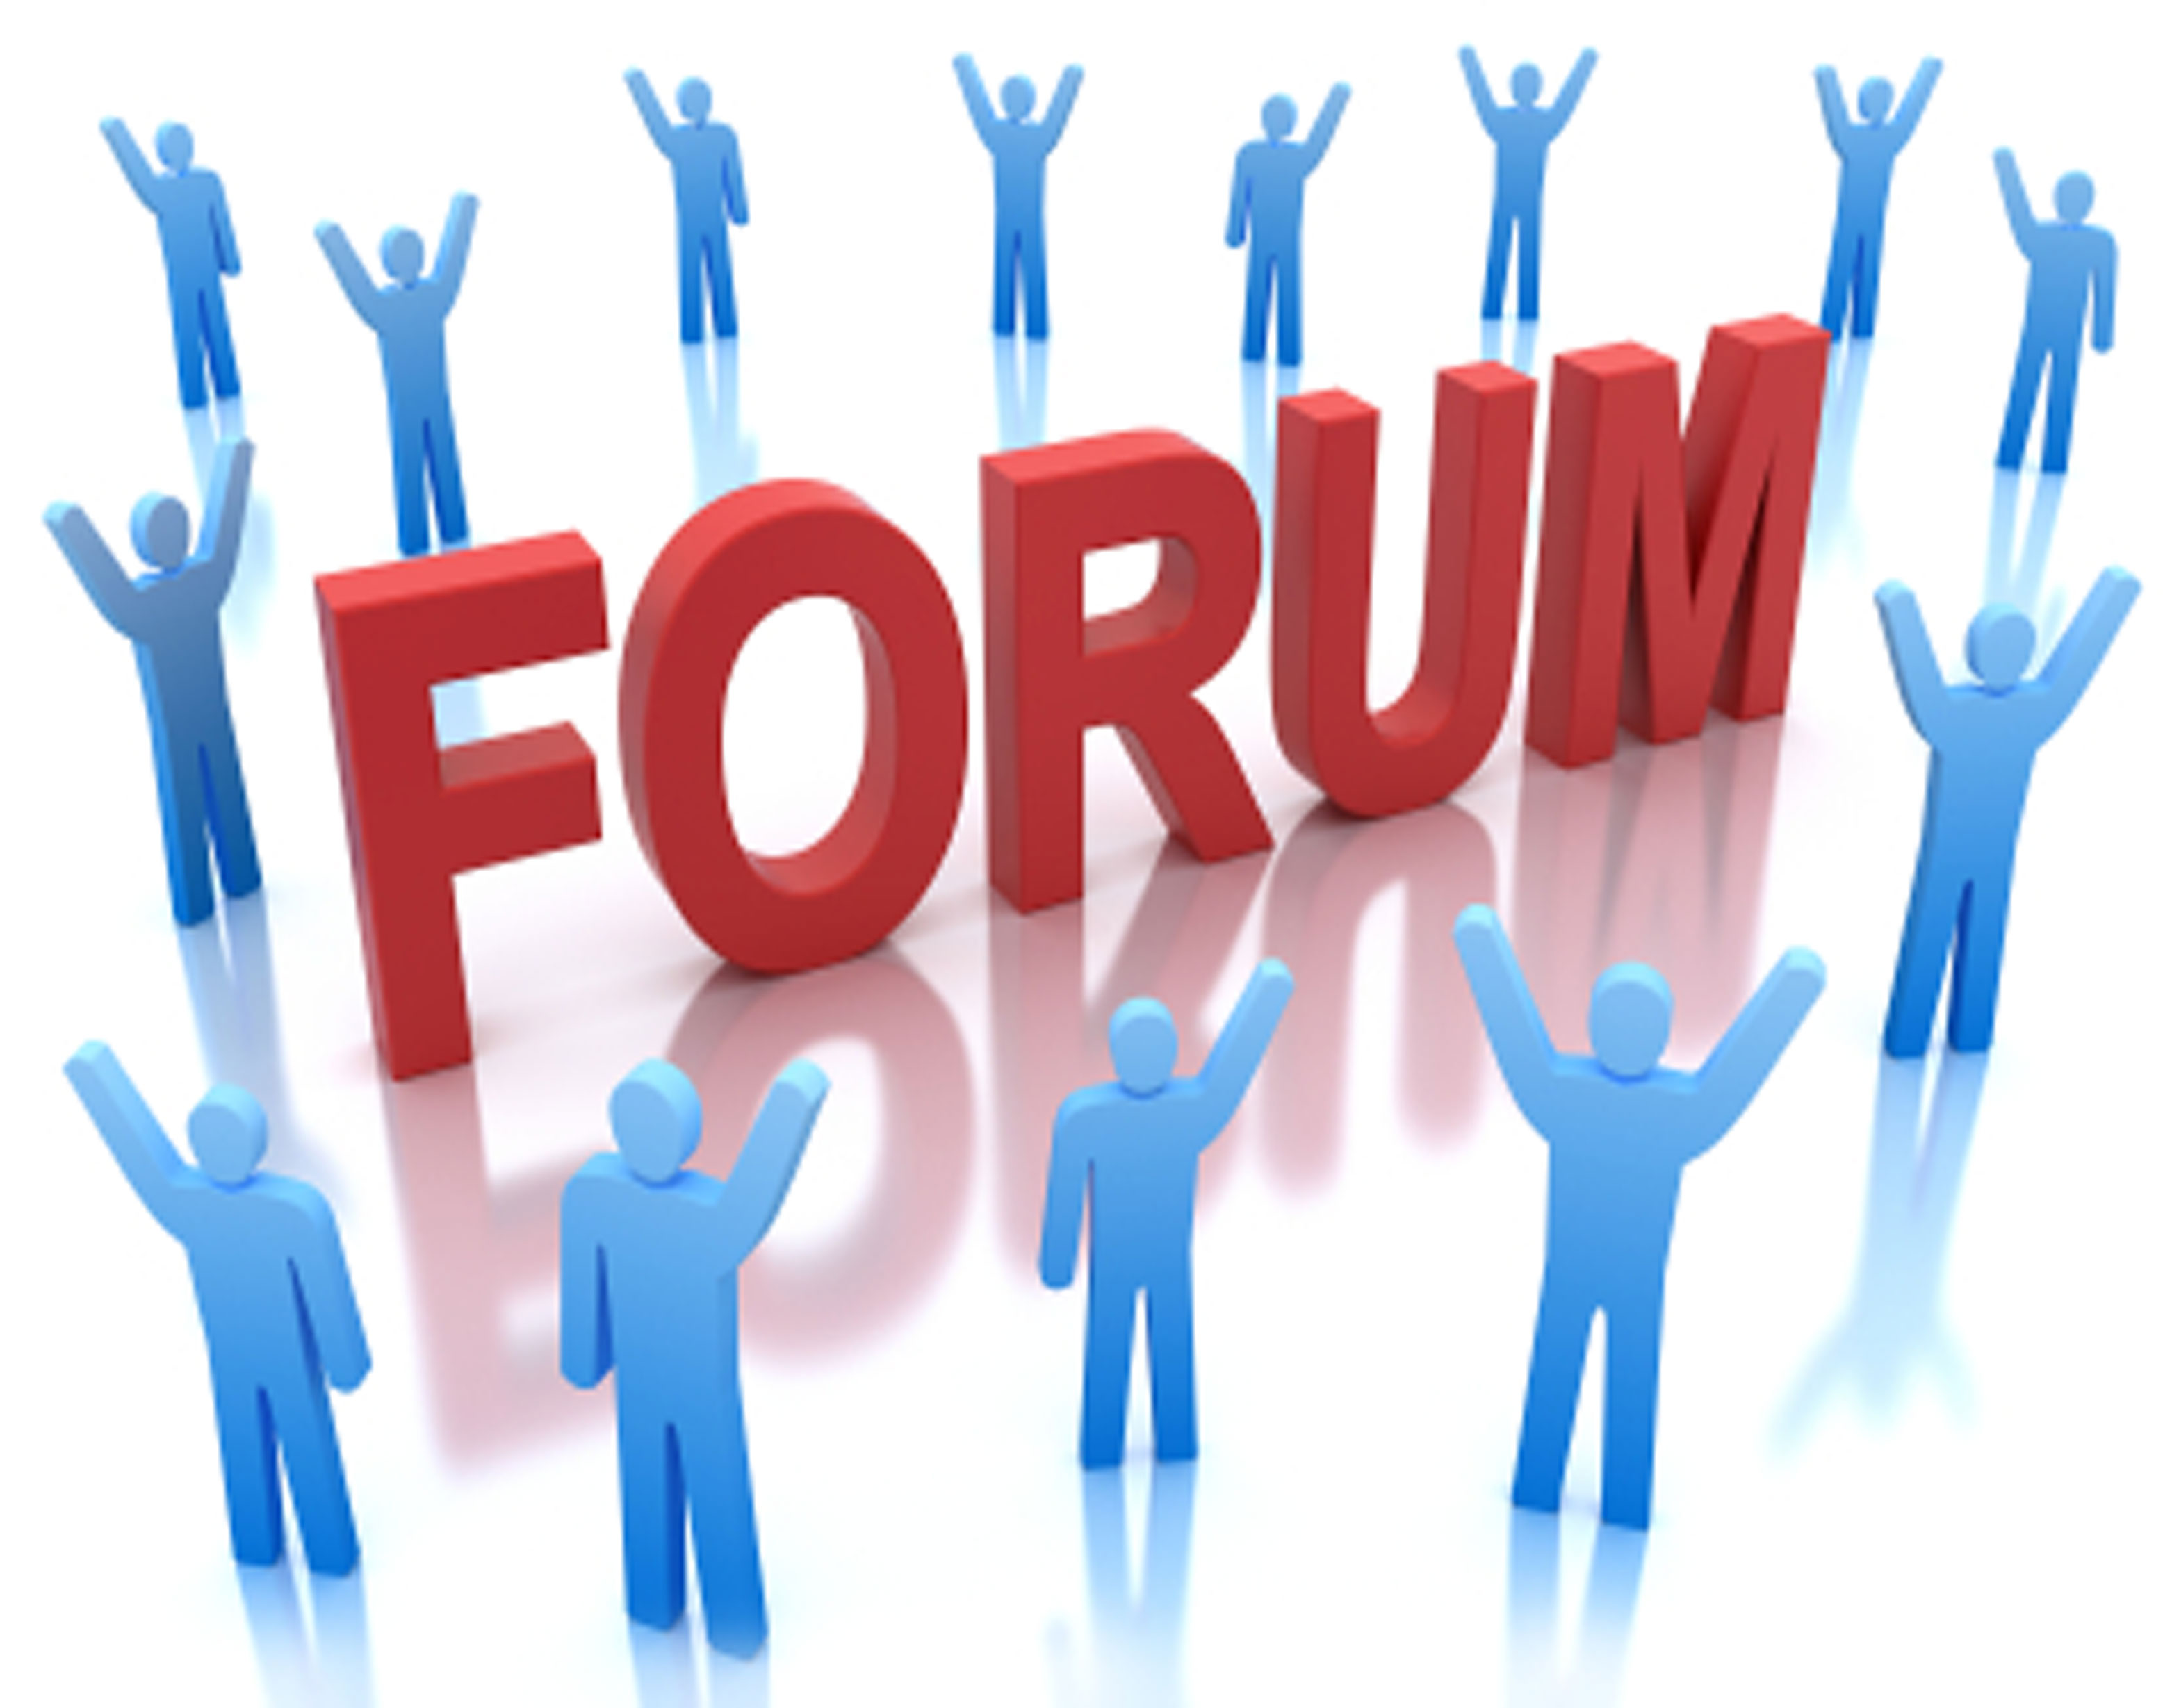 Блоги проекта. Интернет форум. Тематические форумы и блоги. Картинки для форума. Веб форум картинки.